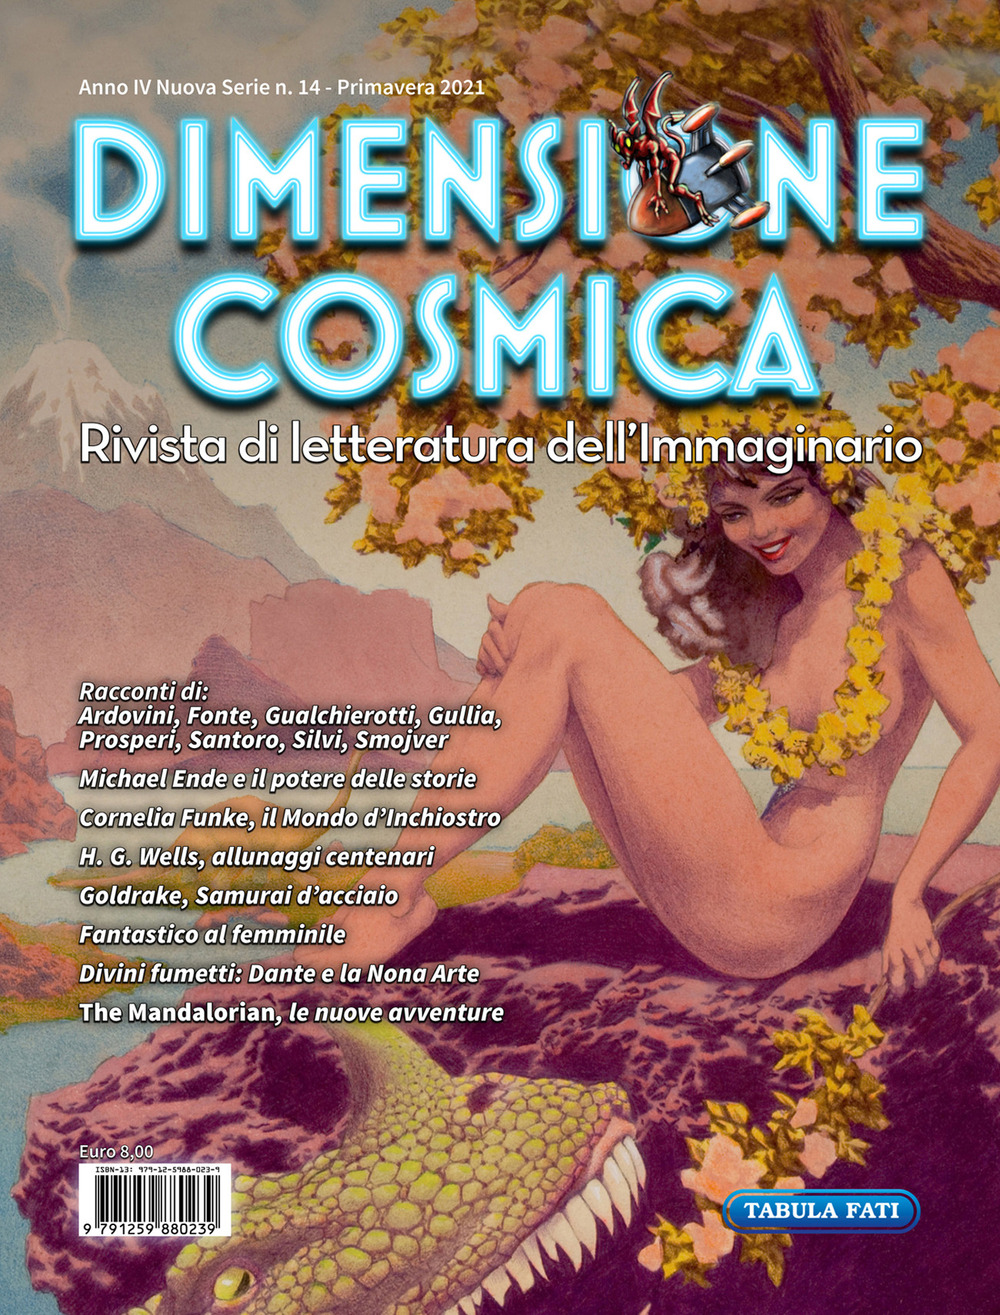 Dimensione cosmica. Rivista di letteratura dell'immaginario (2021). Vol. 14: Primavera